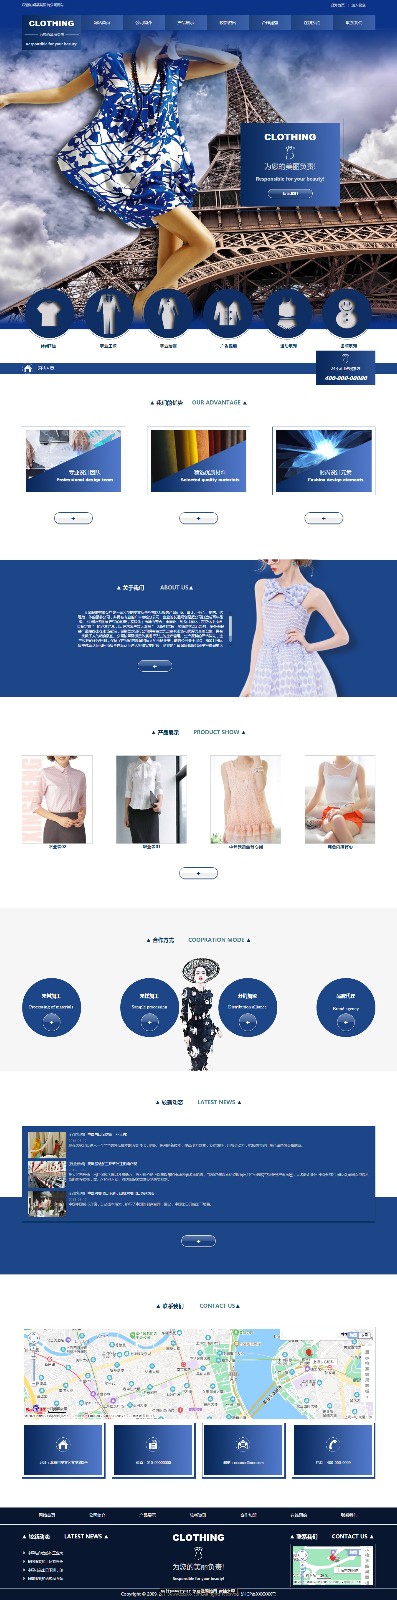 企业网站精美模板-clothing-1256503